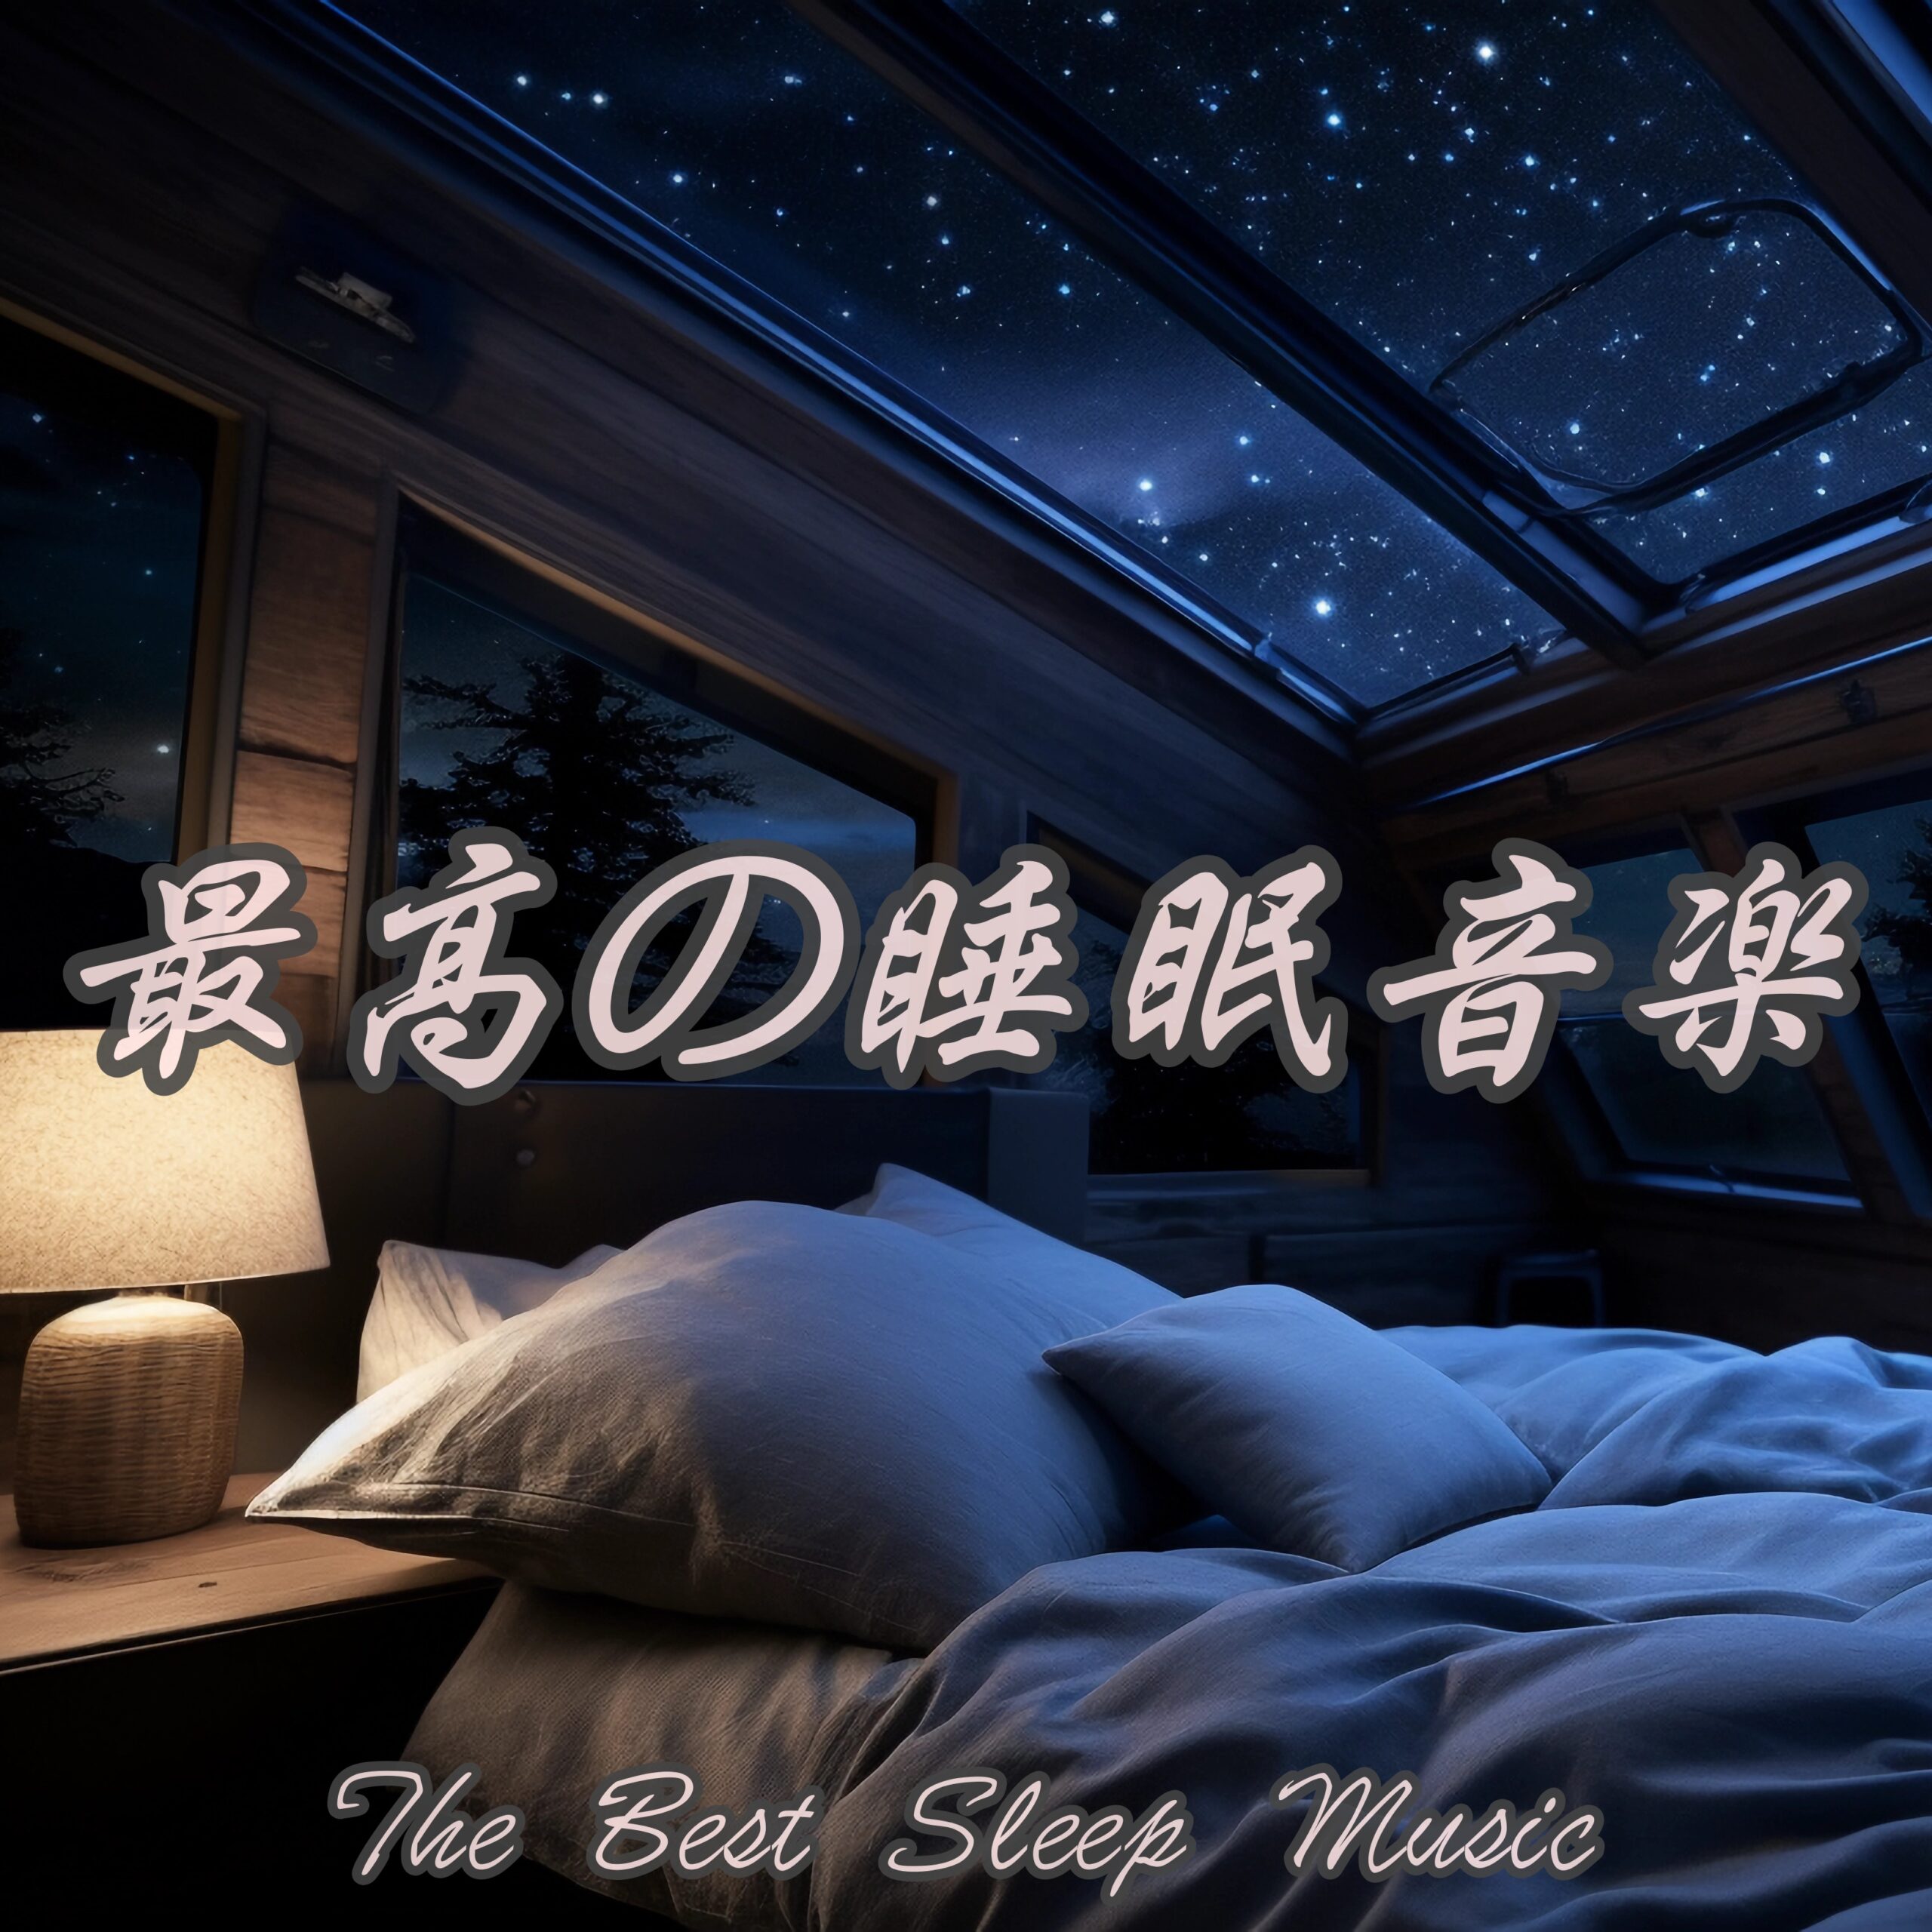 最高の睡眠音楽 The Best Sleep Music 癒しのヒーリングピアノで睡眠の質を高める 究極のリラックス睡眠音楽